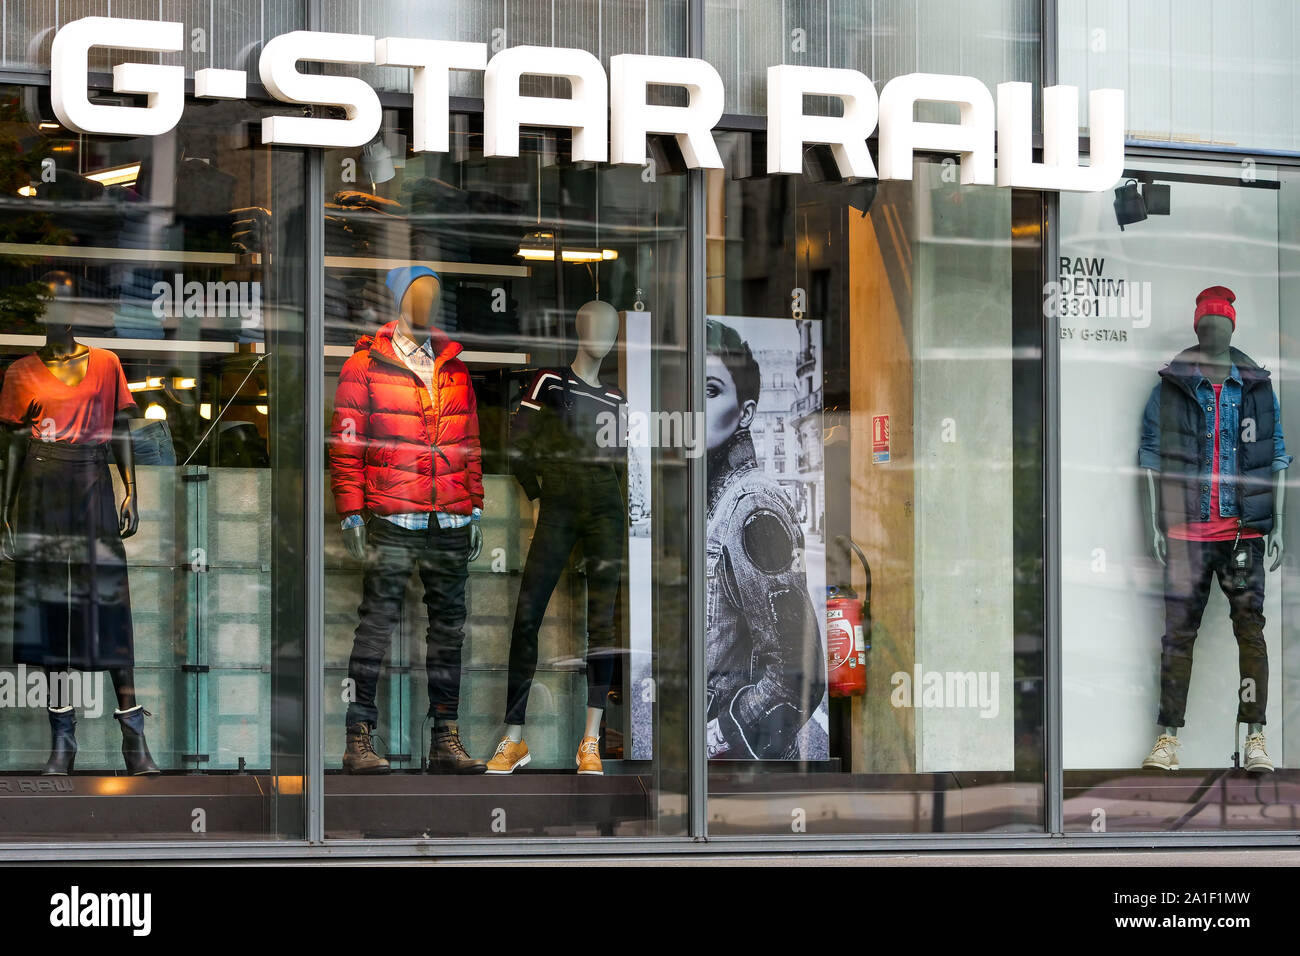 G-Star Raw fashion shop, Confluence 